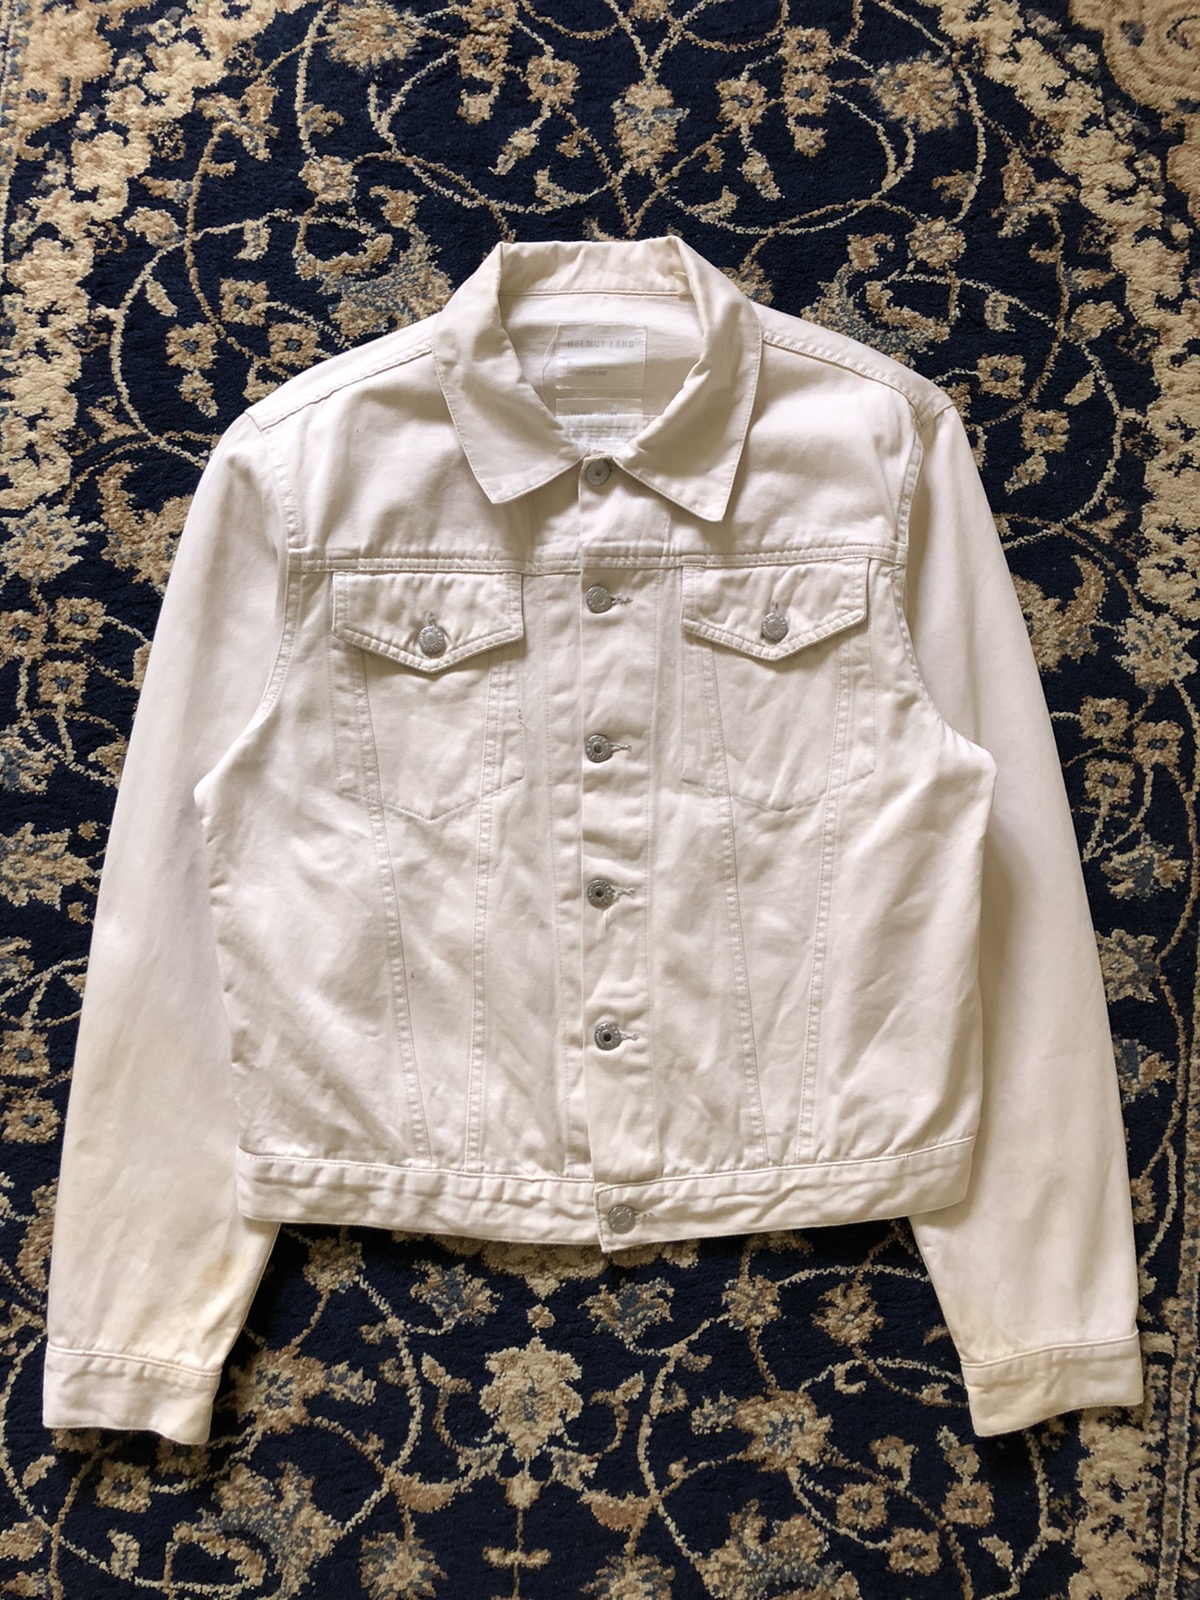 1998 Helmut Lang Off-white Vintage Cotton Jacket - 4